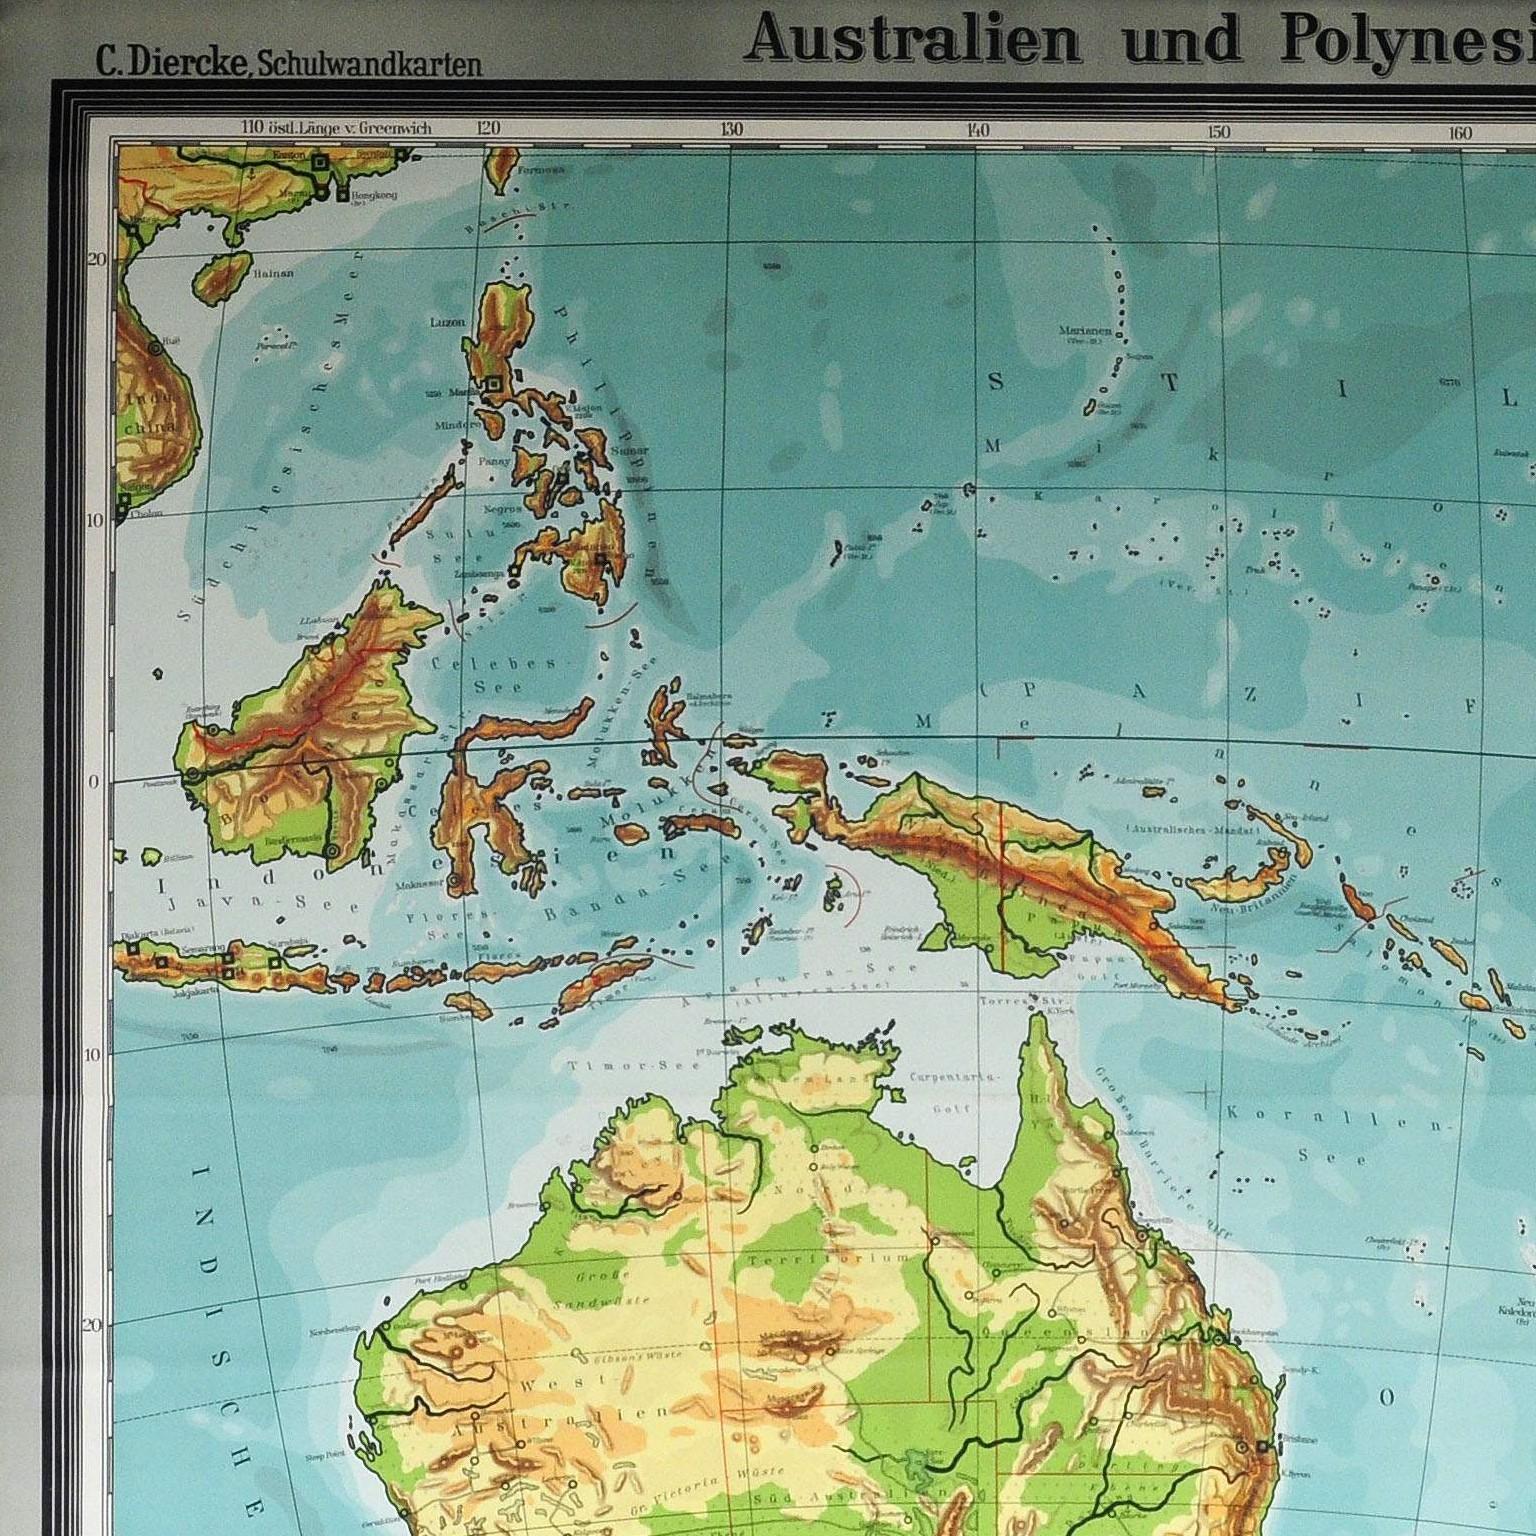 Wandkartenplakat „Vintage“, Rollbar, Australien, Neuseeland, Polynesia

Eine schöne alte Schulkarte, die die beliebte Region Australien und Polynesien zeigt. Als Unterrichtsmaterial in deutschen Schulen um die 1970er Jahre verwendet. Farbenfroher